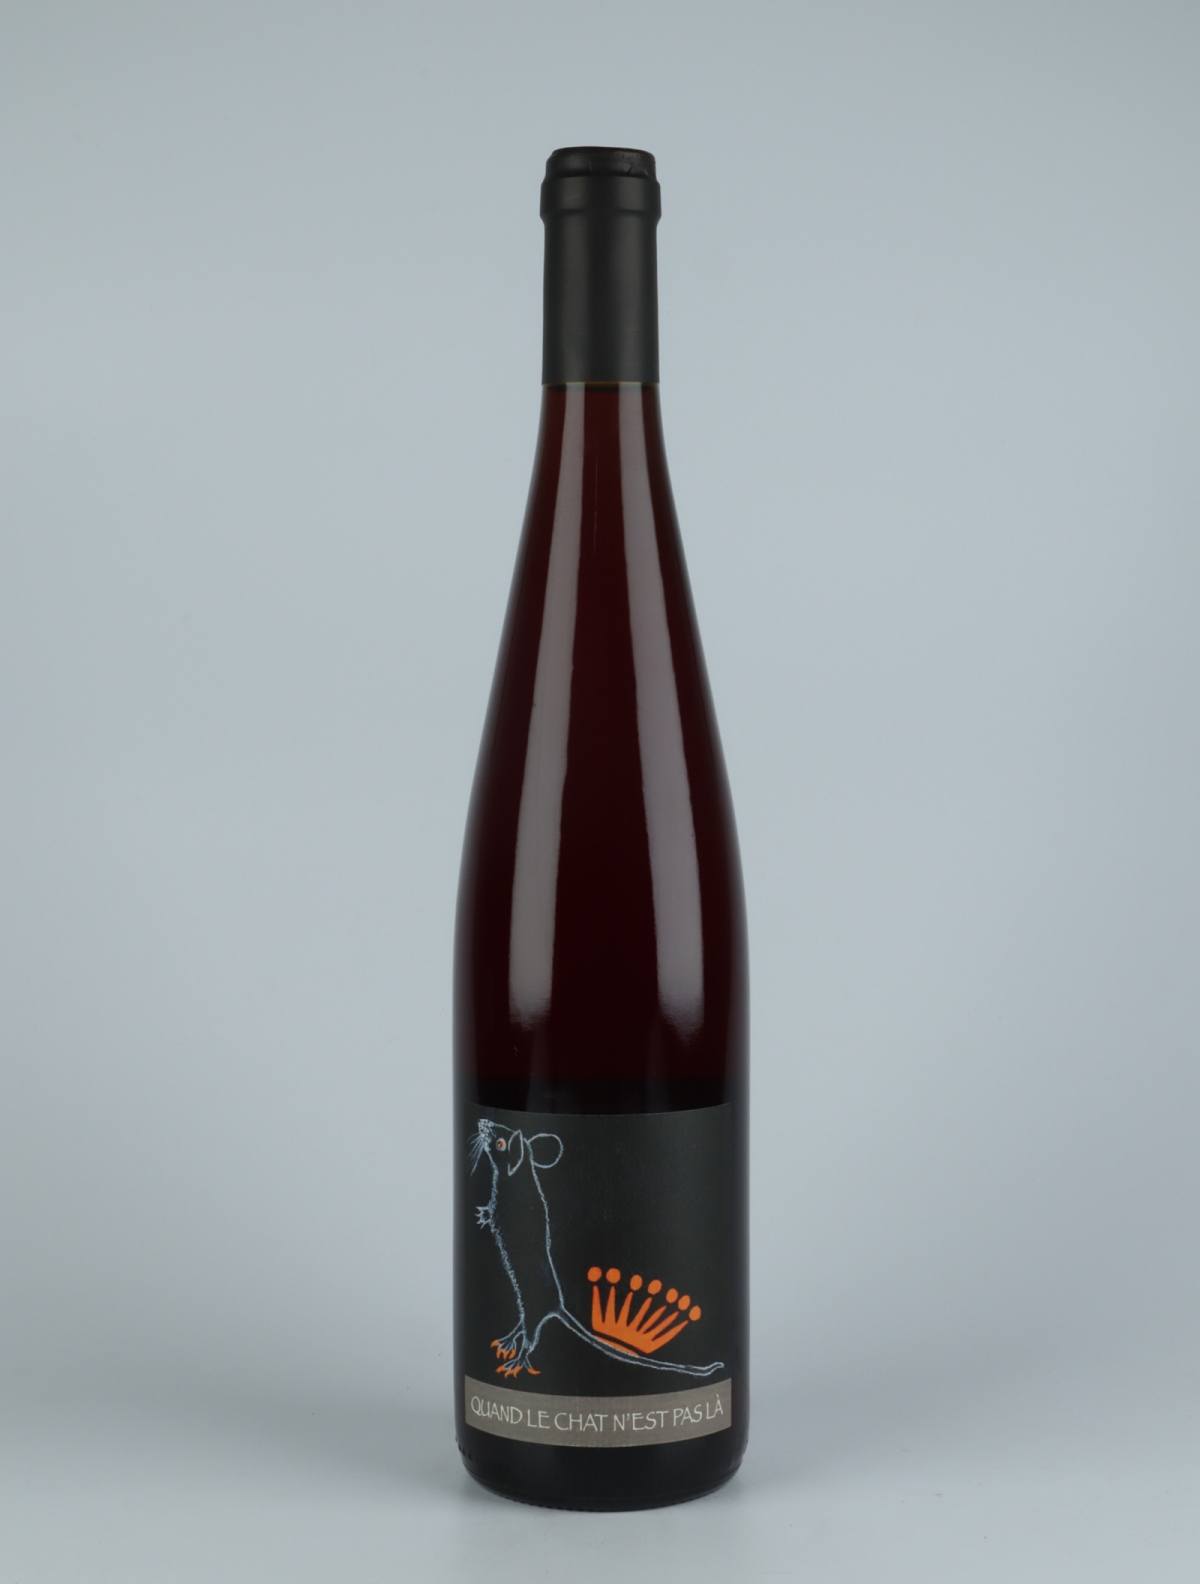 A bottle 2020 Quand le Chat n'est pas la Orange wine from Domaine Rietsch, Alsace in France